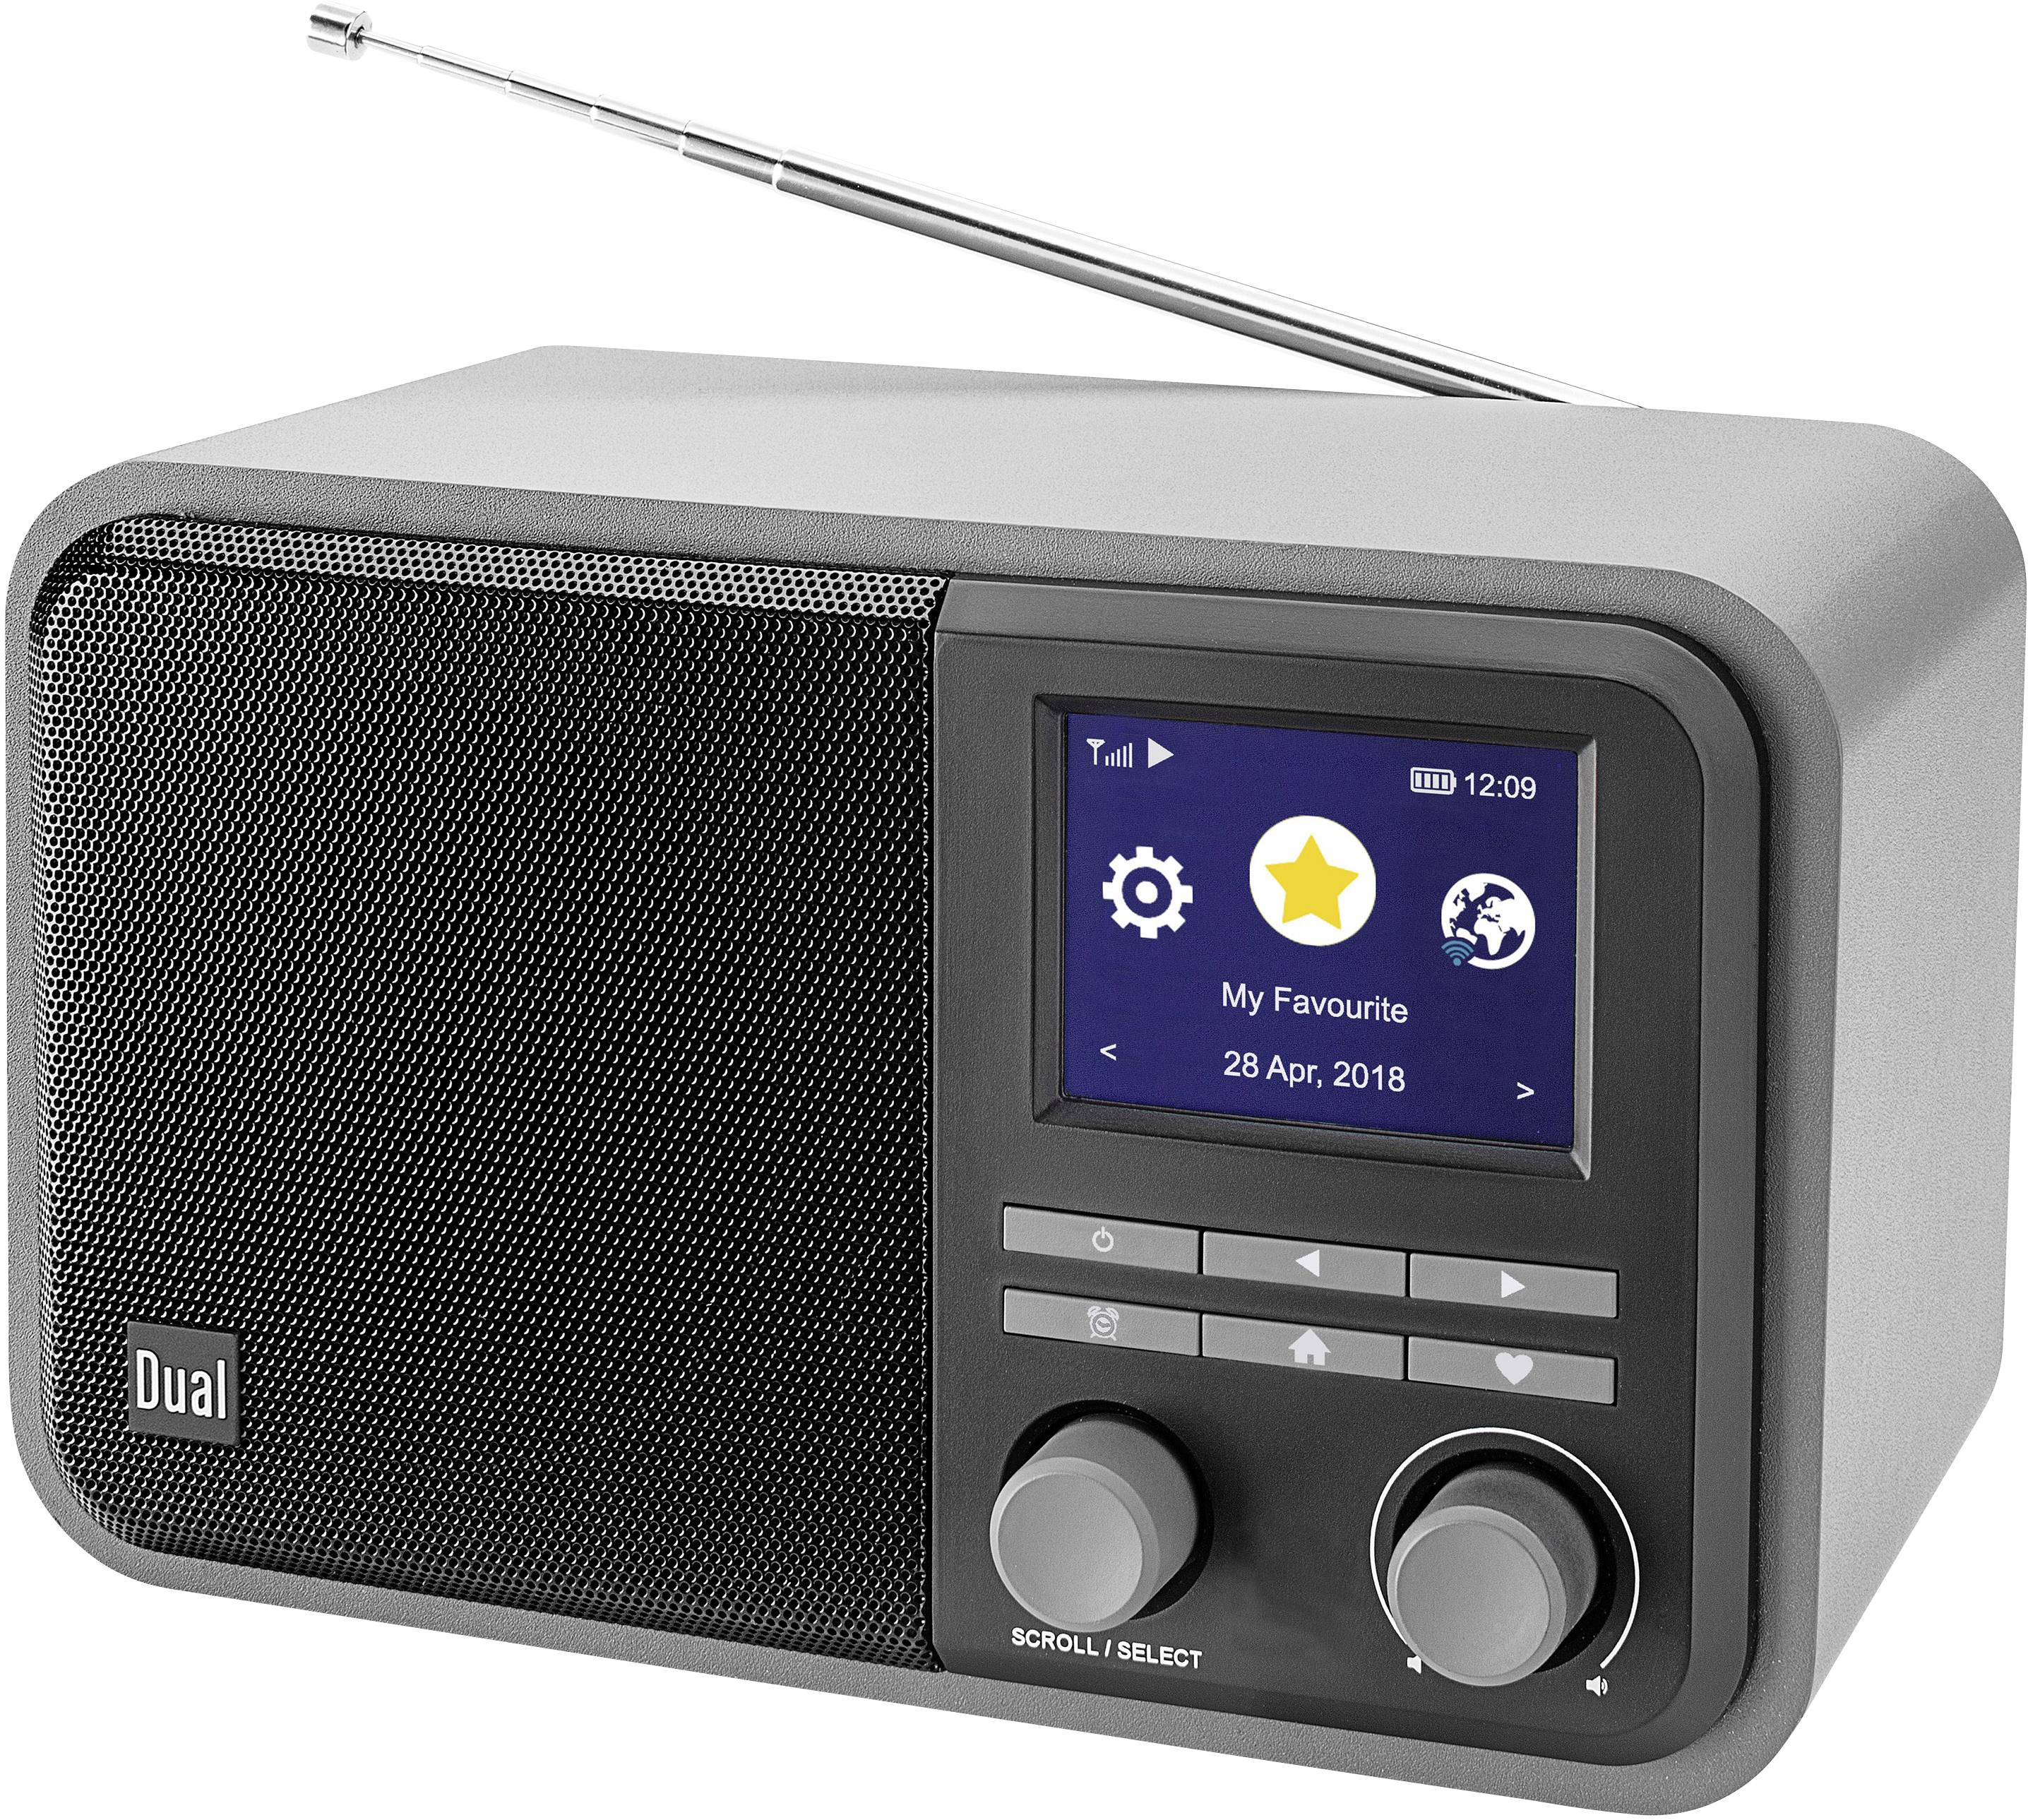 Dual Dual CR 510 - Smartradio Portable radio DAB+, DAB, FM, Internet Bluetooth, FM, Internet radio, USB, | Conrad.com